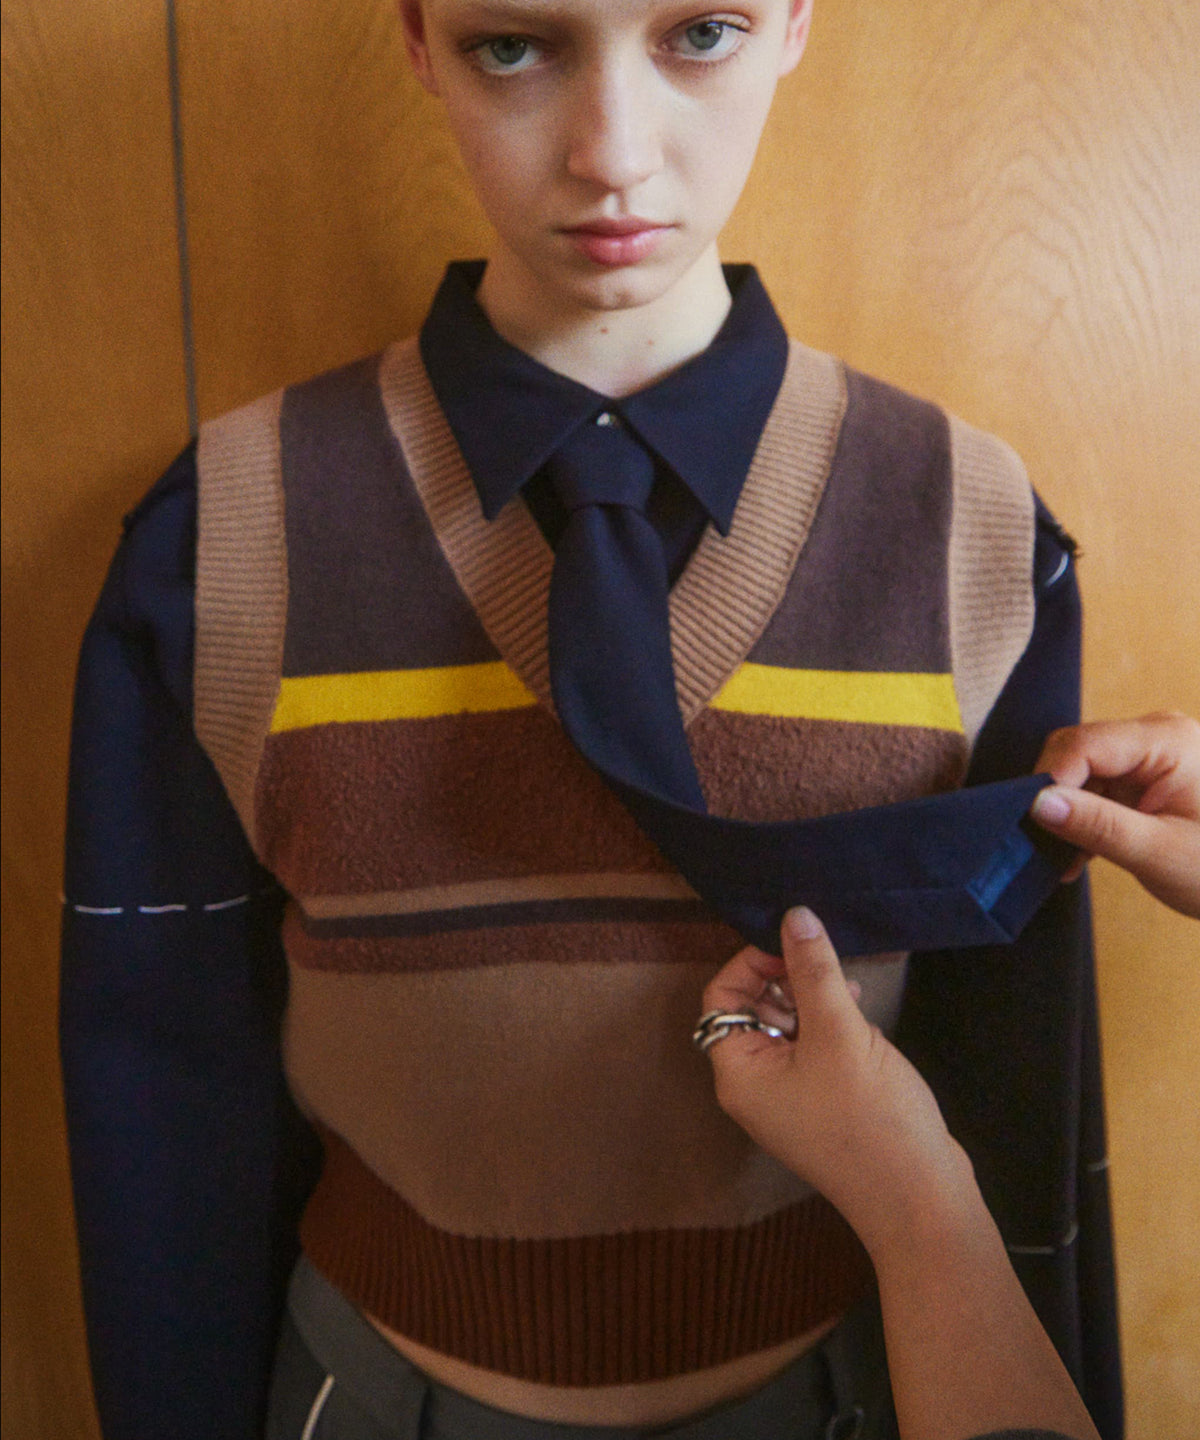 【24AUTUMN PRE-ORDER】Bicolor Knit  Vest